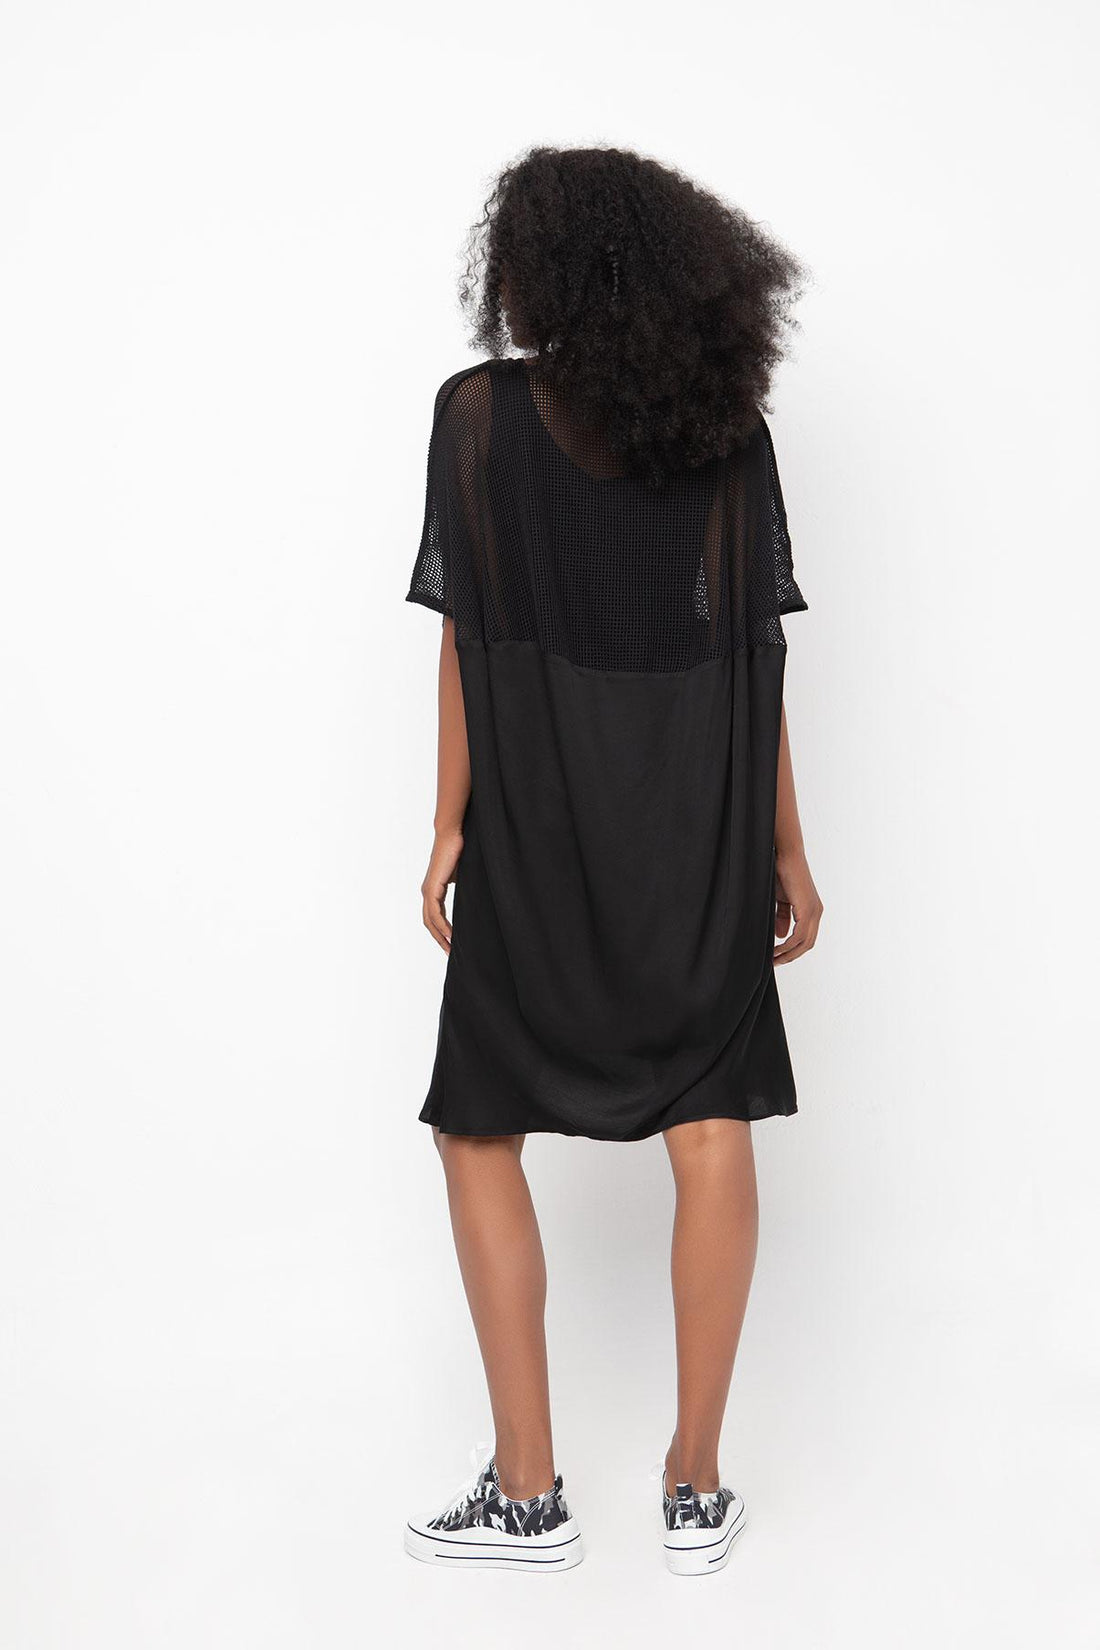 zwarte elegante jurk met mesh mouwen - model 840144 - Ozai N Kü